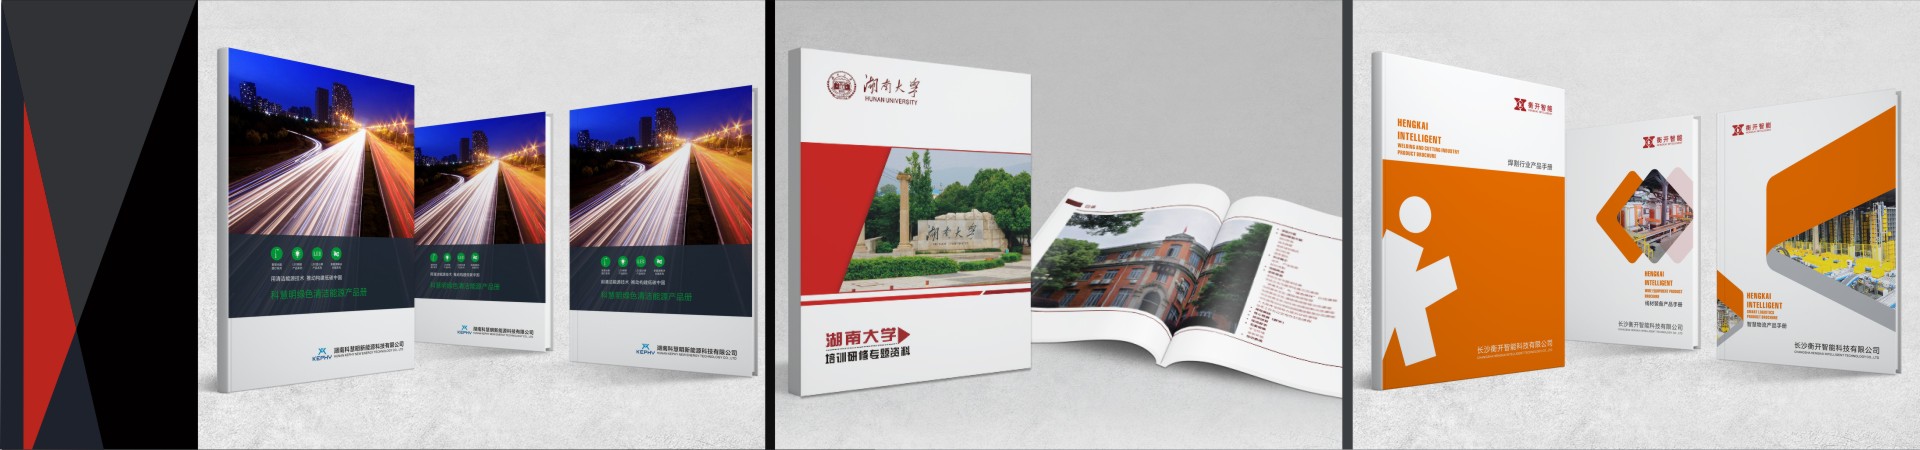 长沙画册设计 长沙宣传册设计  长沙VI设计_画册设计